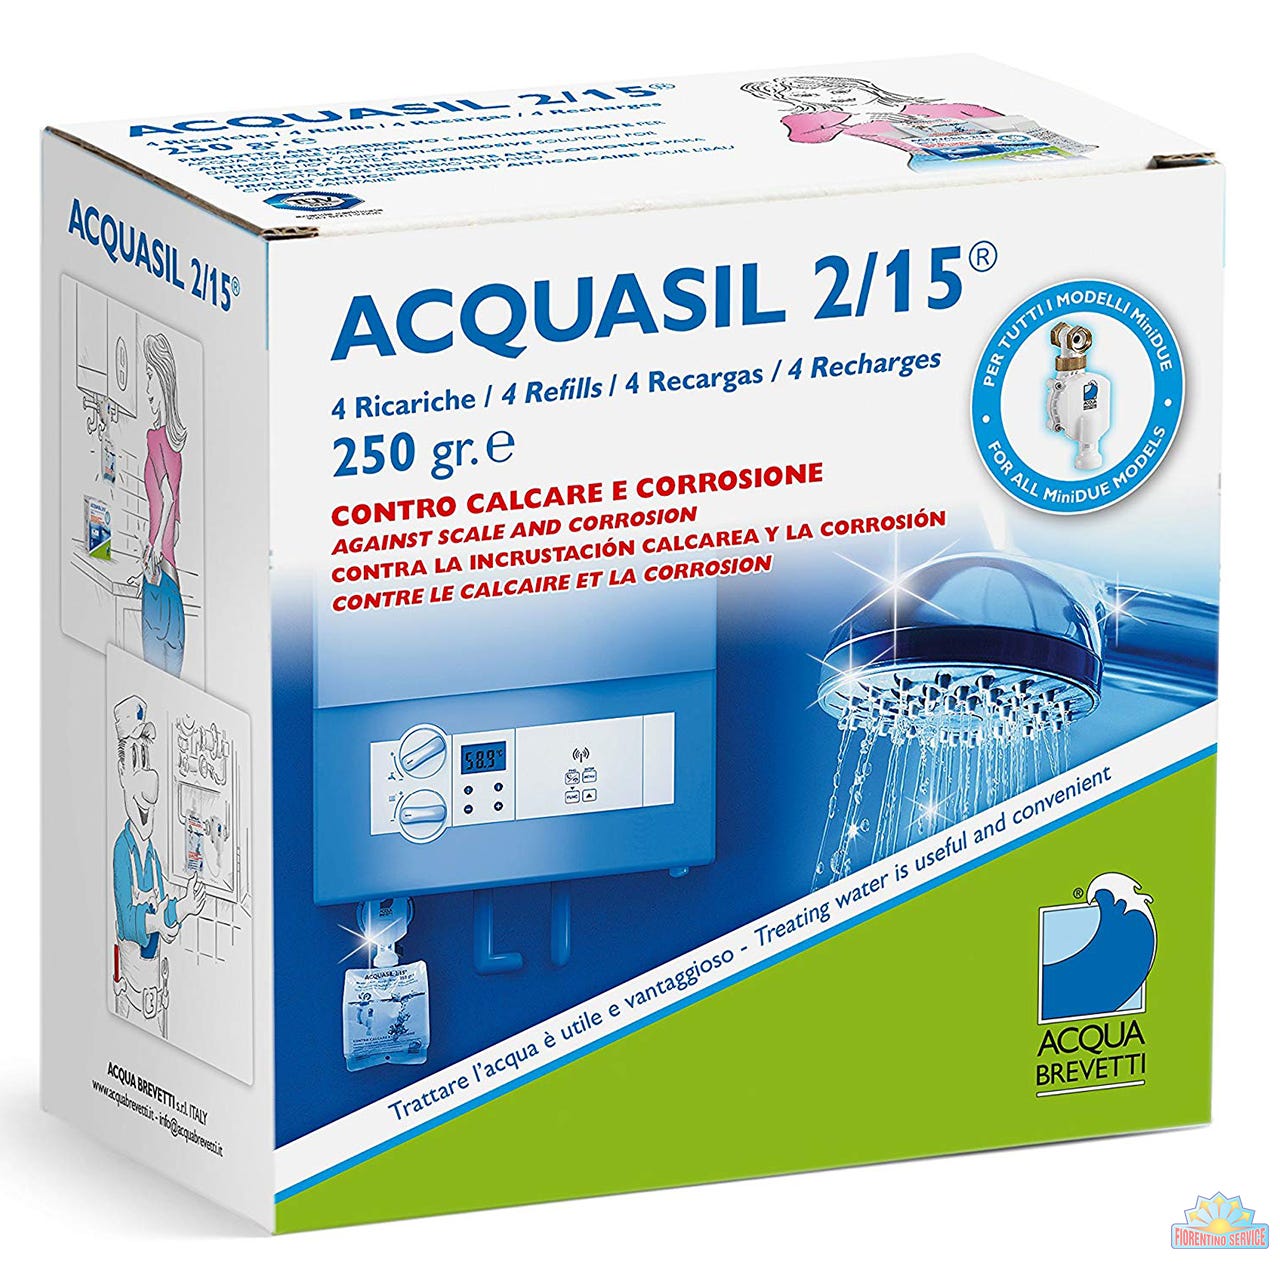 Acqua Brevetti Confezione 4 Ricariche ACQUASIL 2/15 GR.250 PC100 1